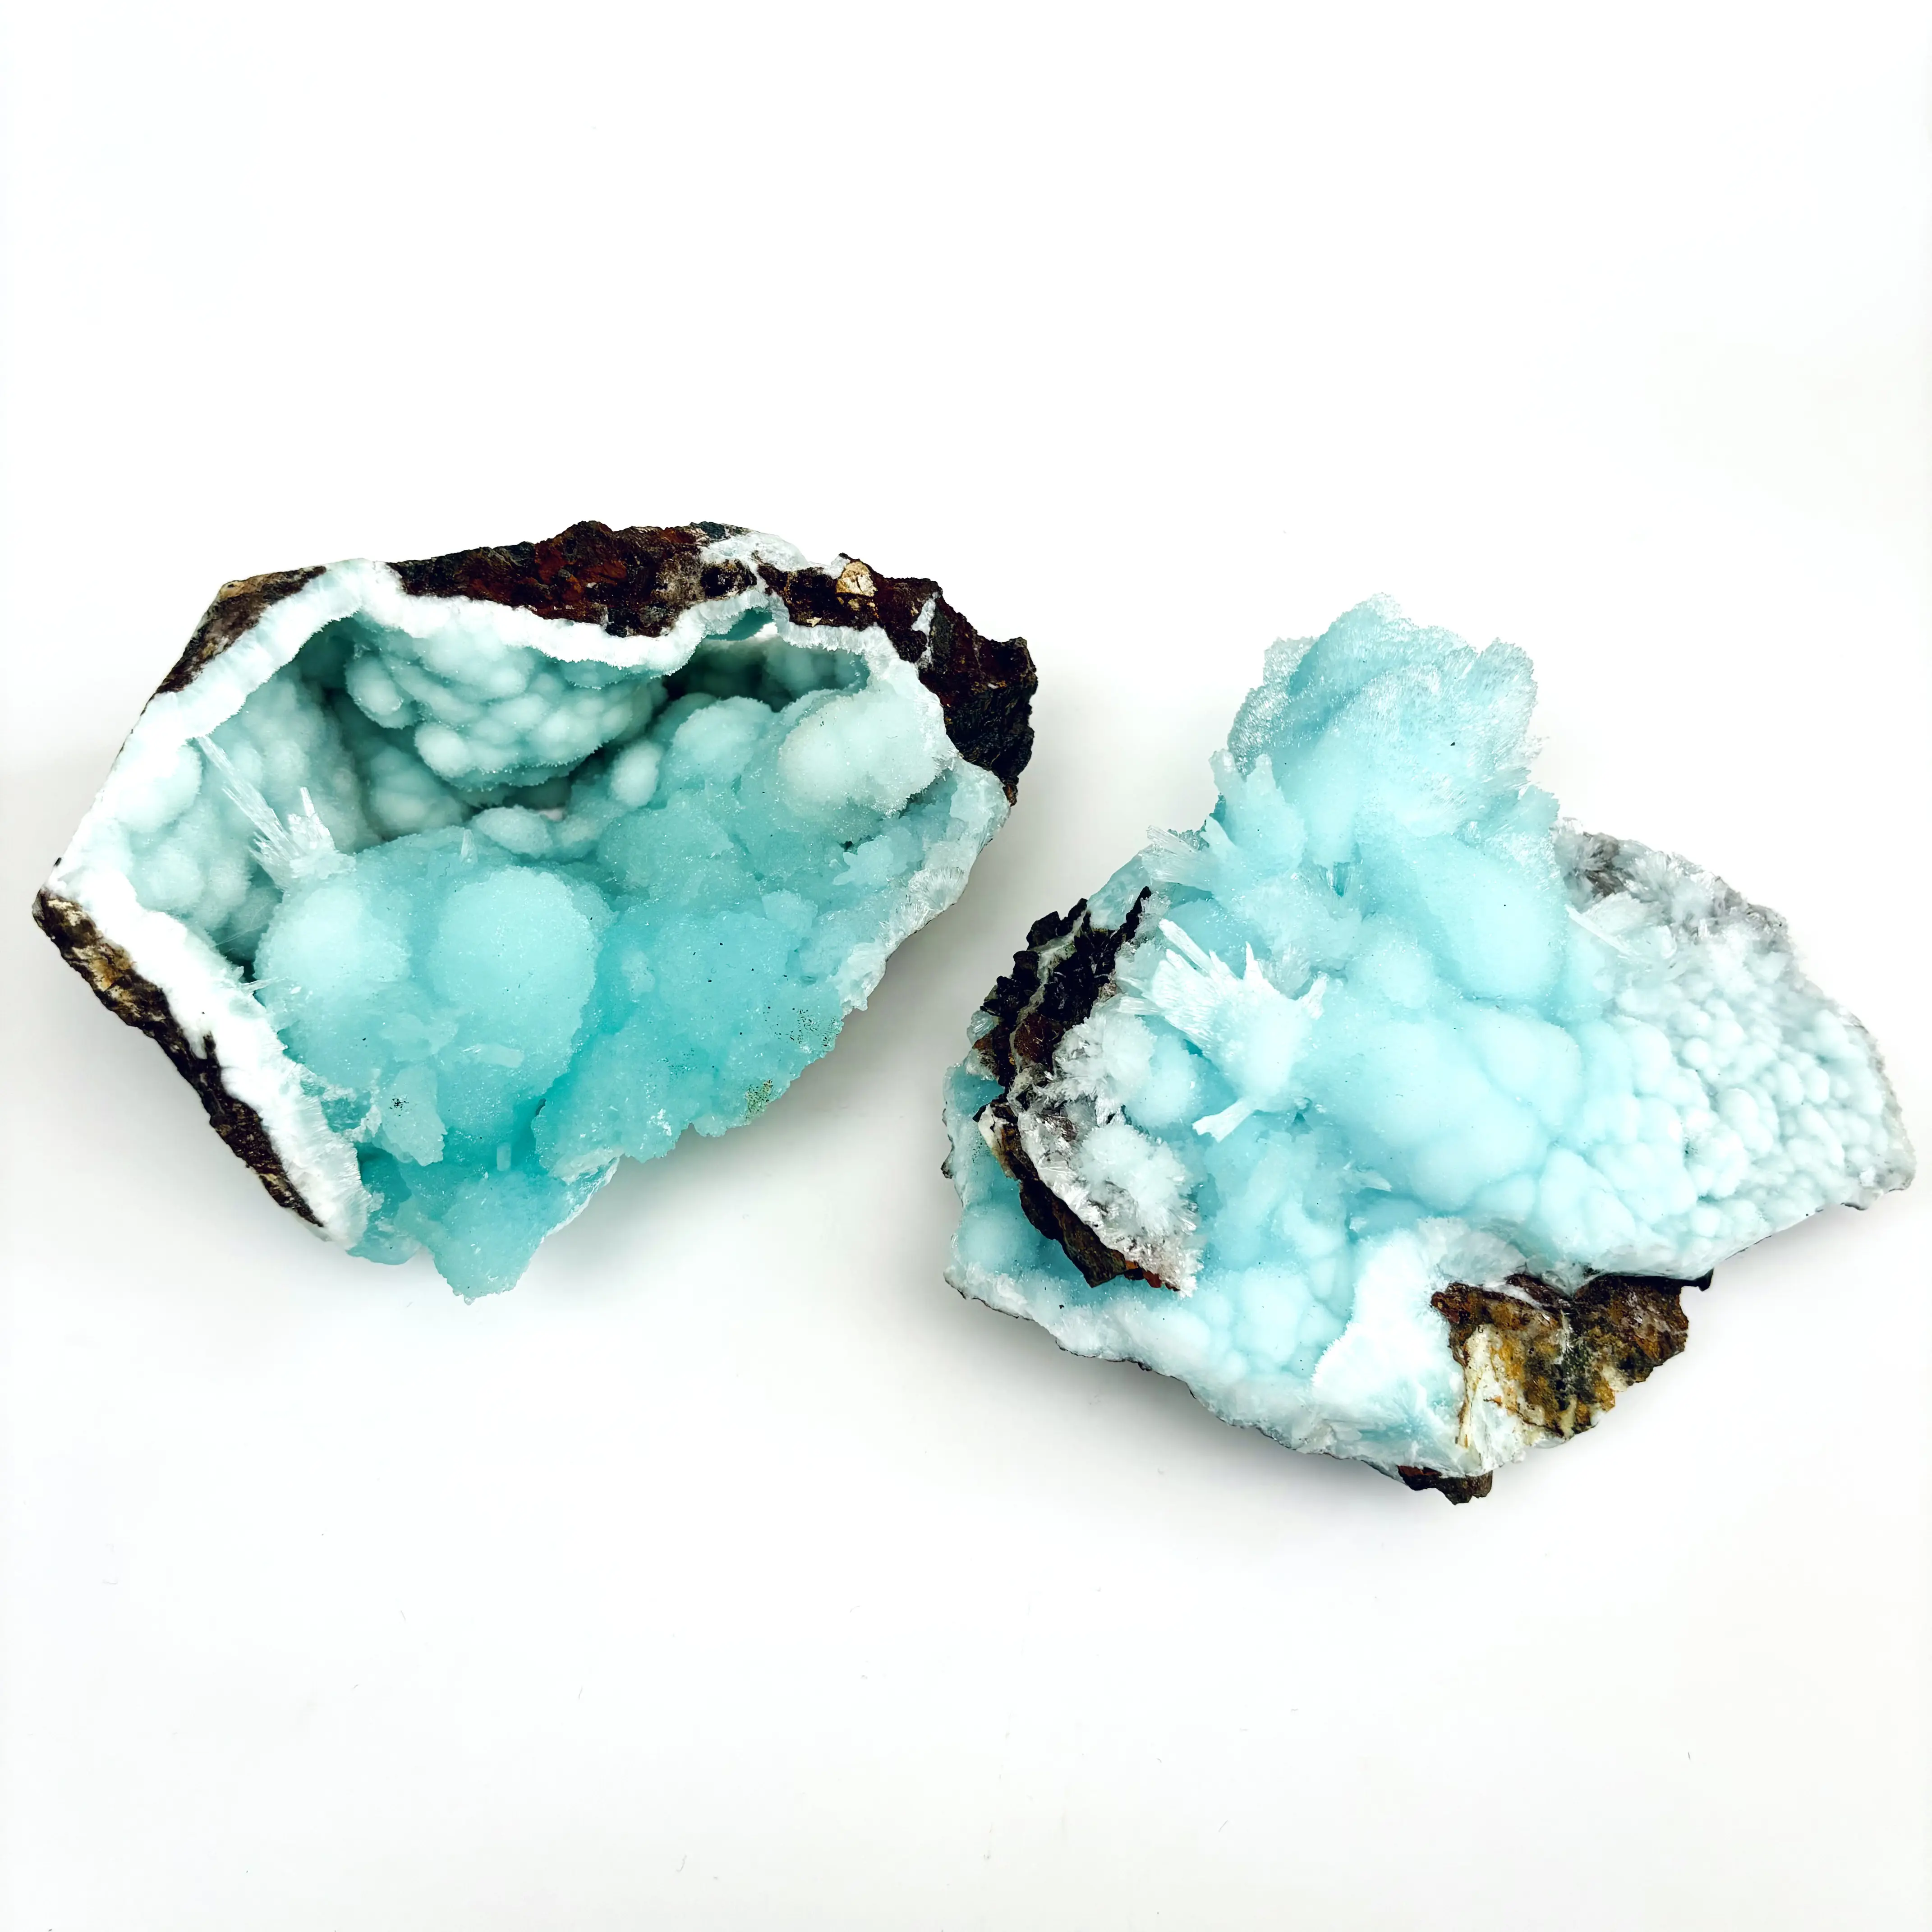 Natürlicher blauer Aragonit-Specimen Edelstein Heilung Energie Steinfelsen und rohe Kristall-Specimen mit hochwertiger Qualität